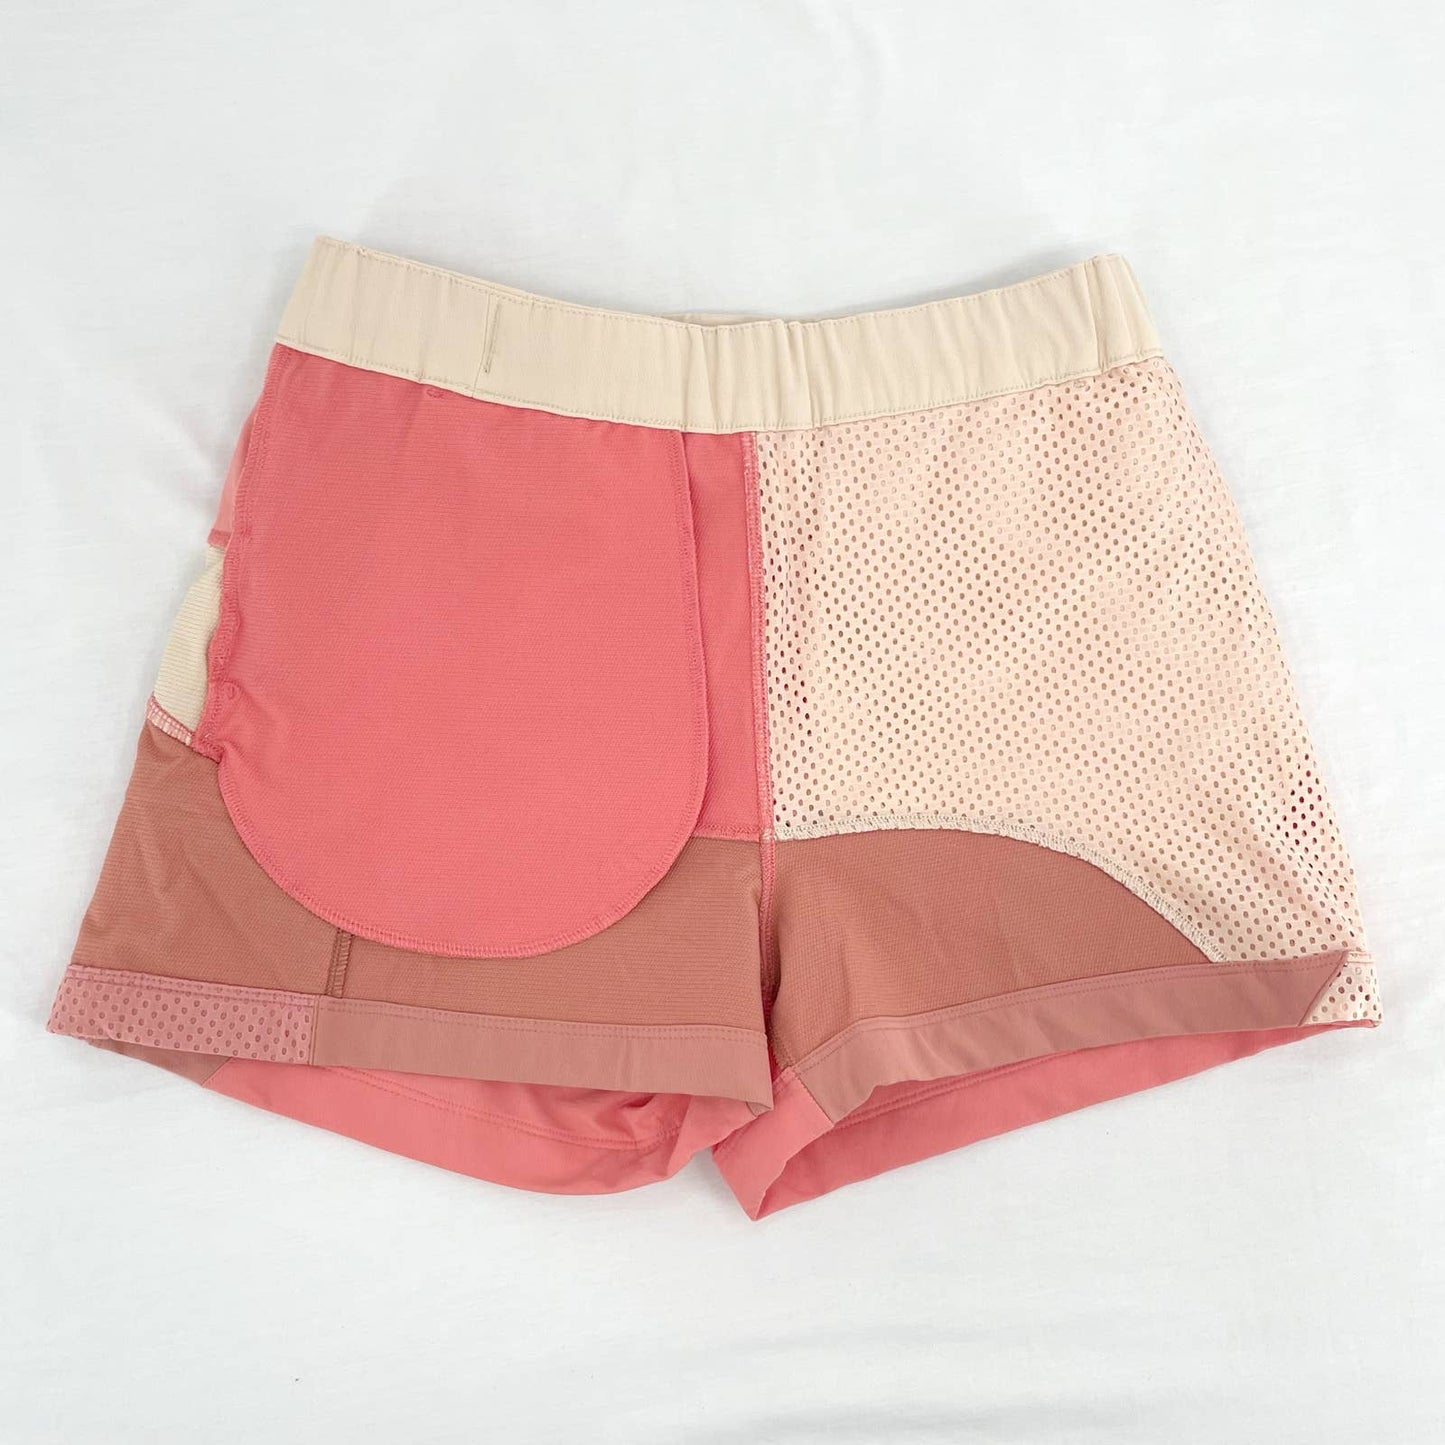 NEW Outdoor Voices RecTrek 3” Colorblock Skort Pink Cream Hiking Active Skirt Size XS